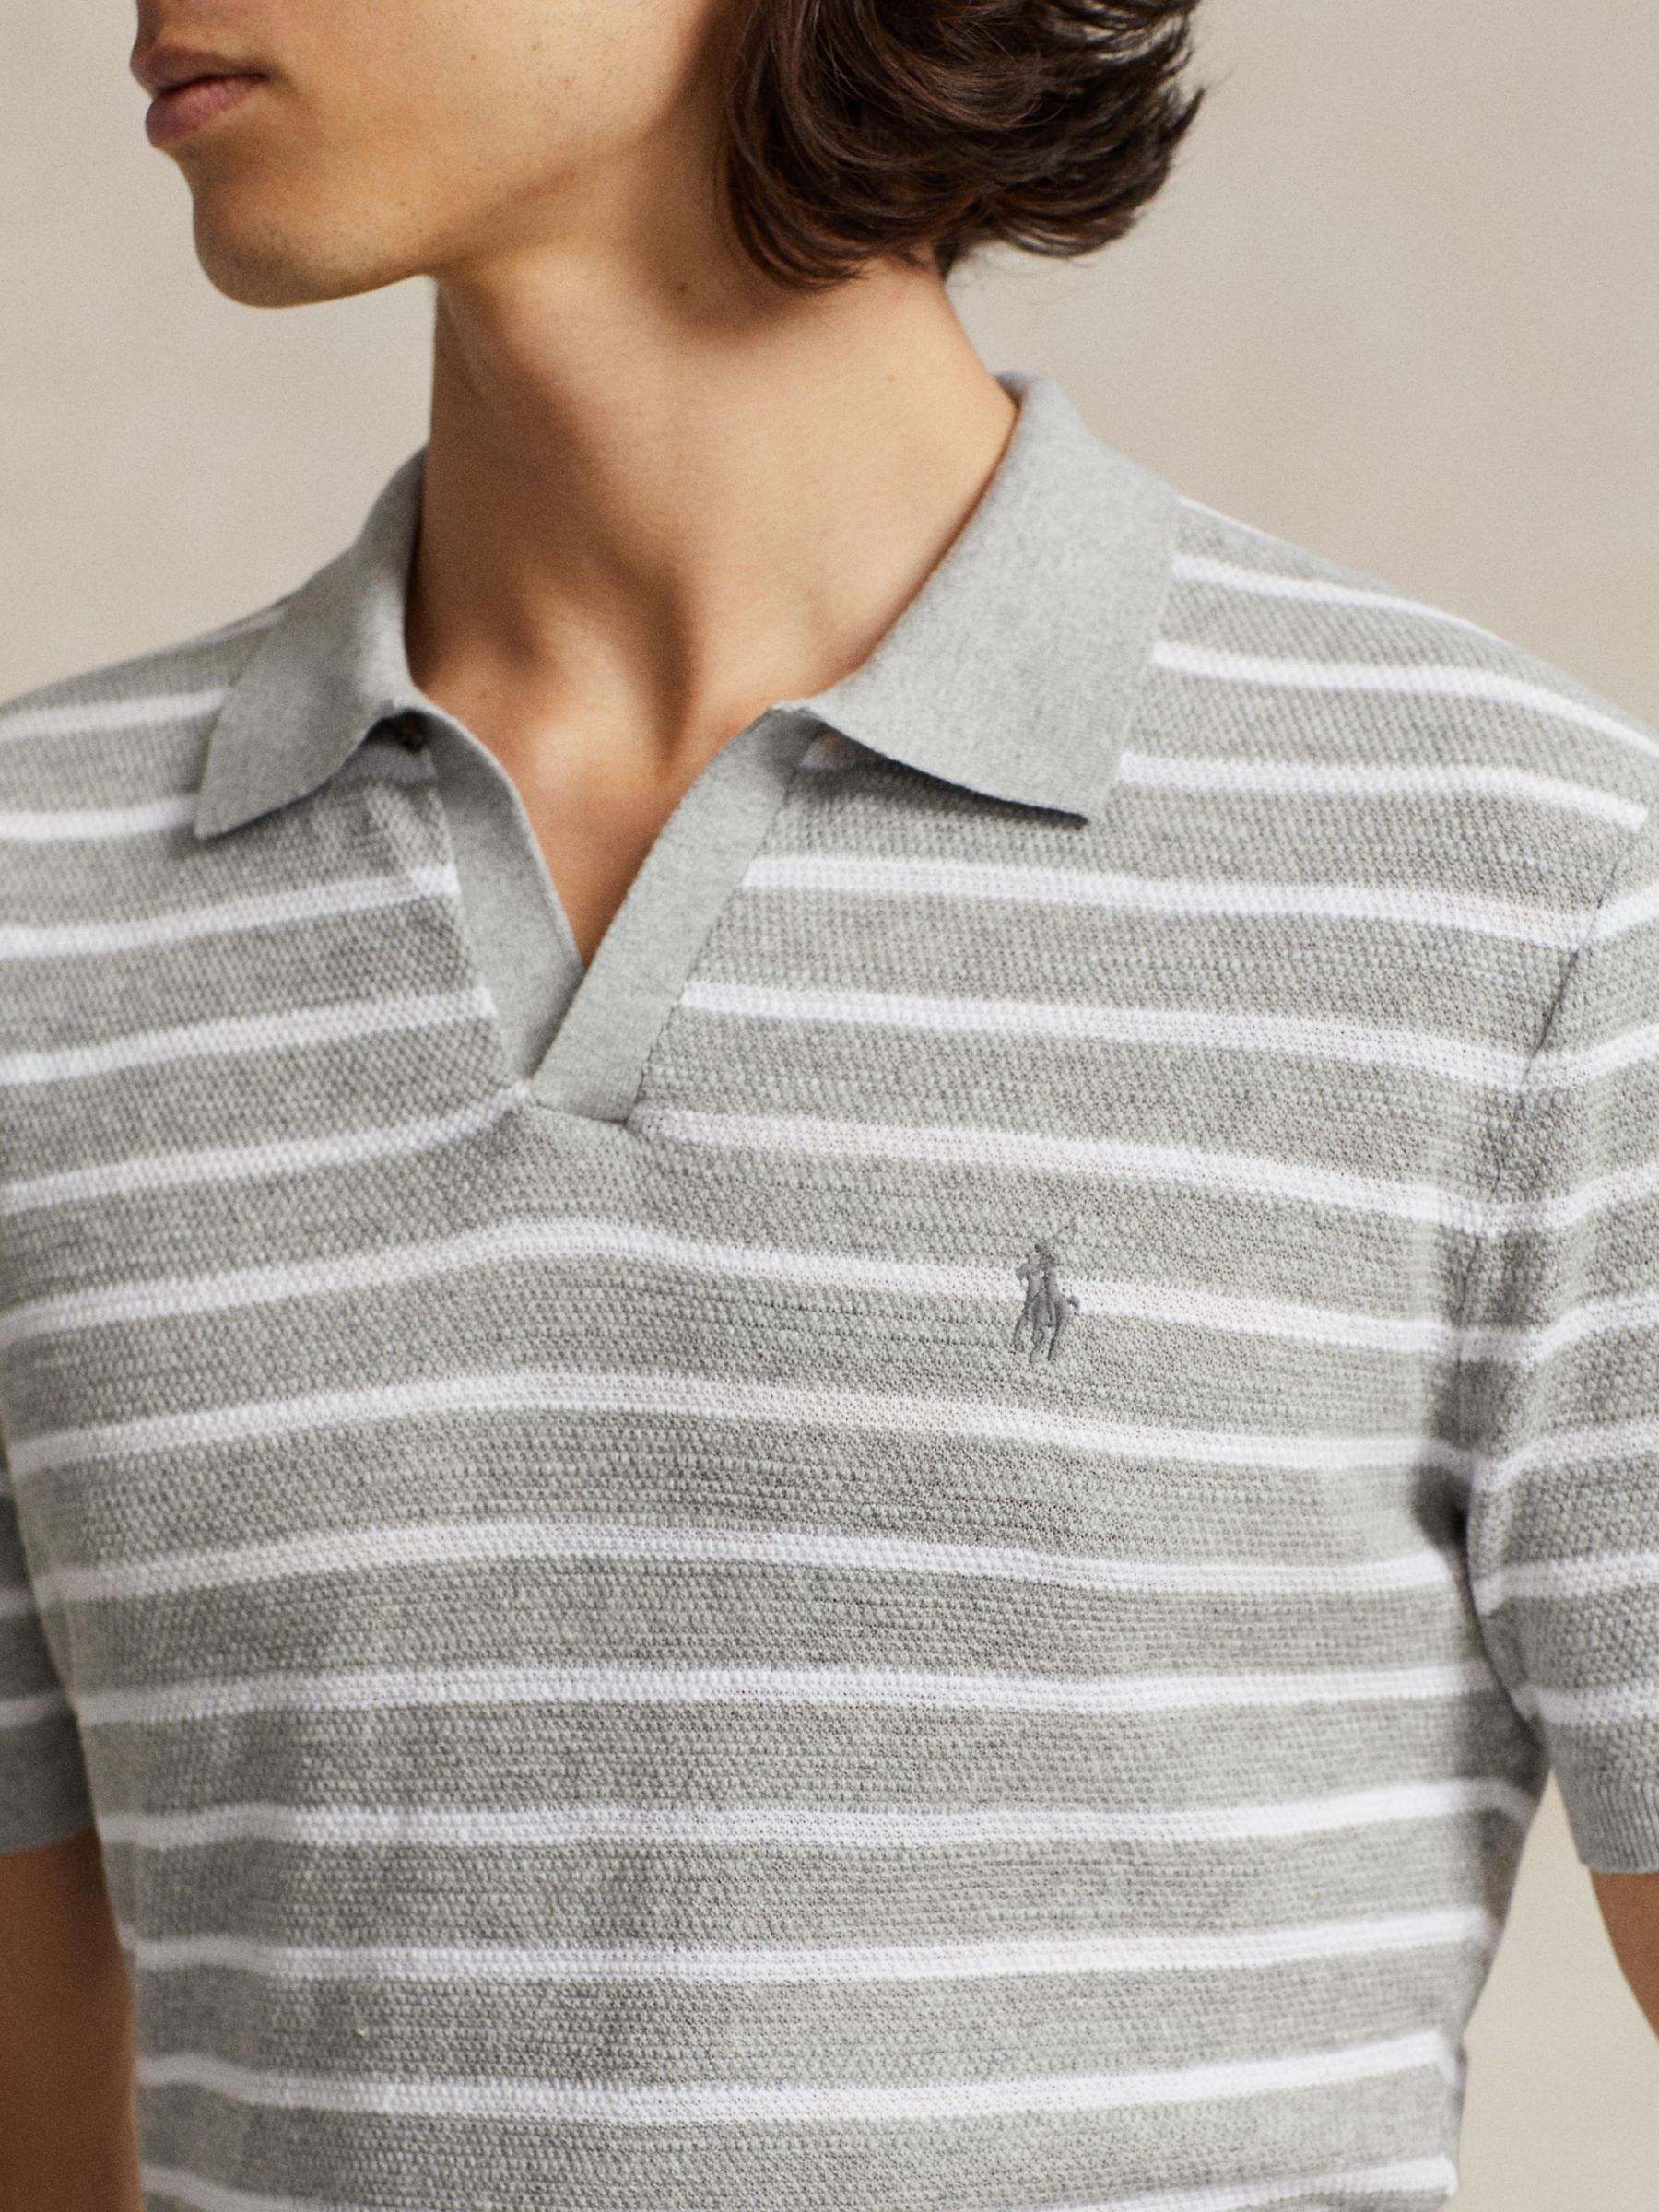 Ralph Lauren Striped Linen Blend Polo Shirt, Grey, S